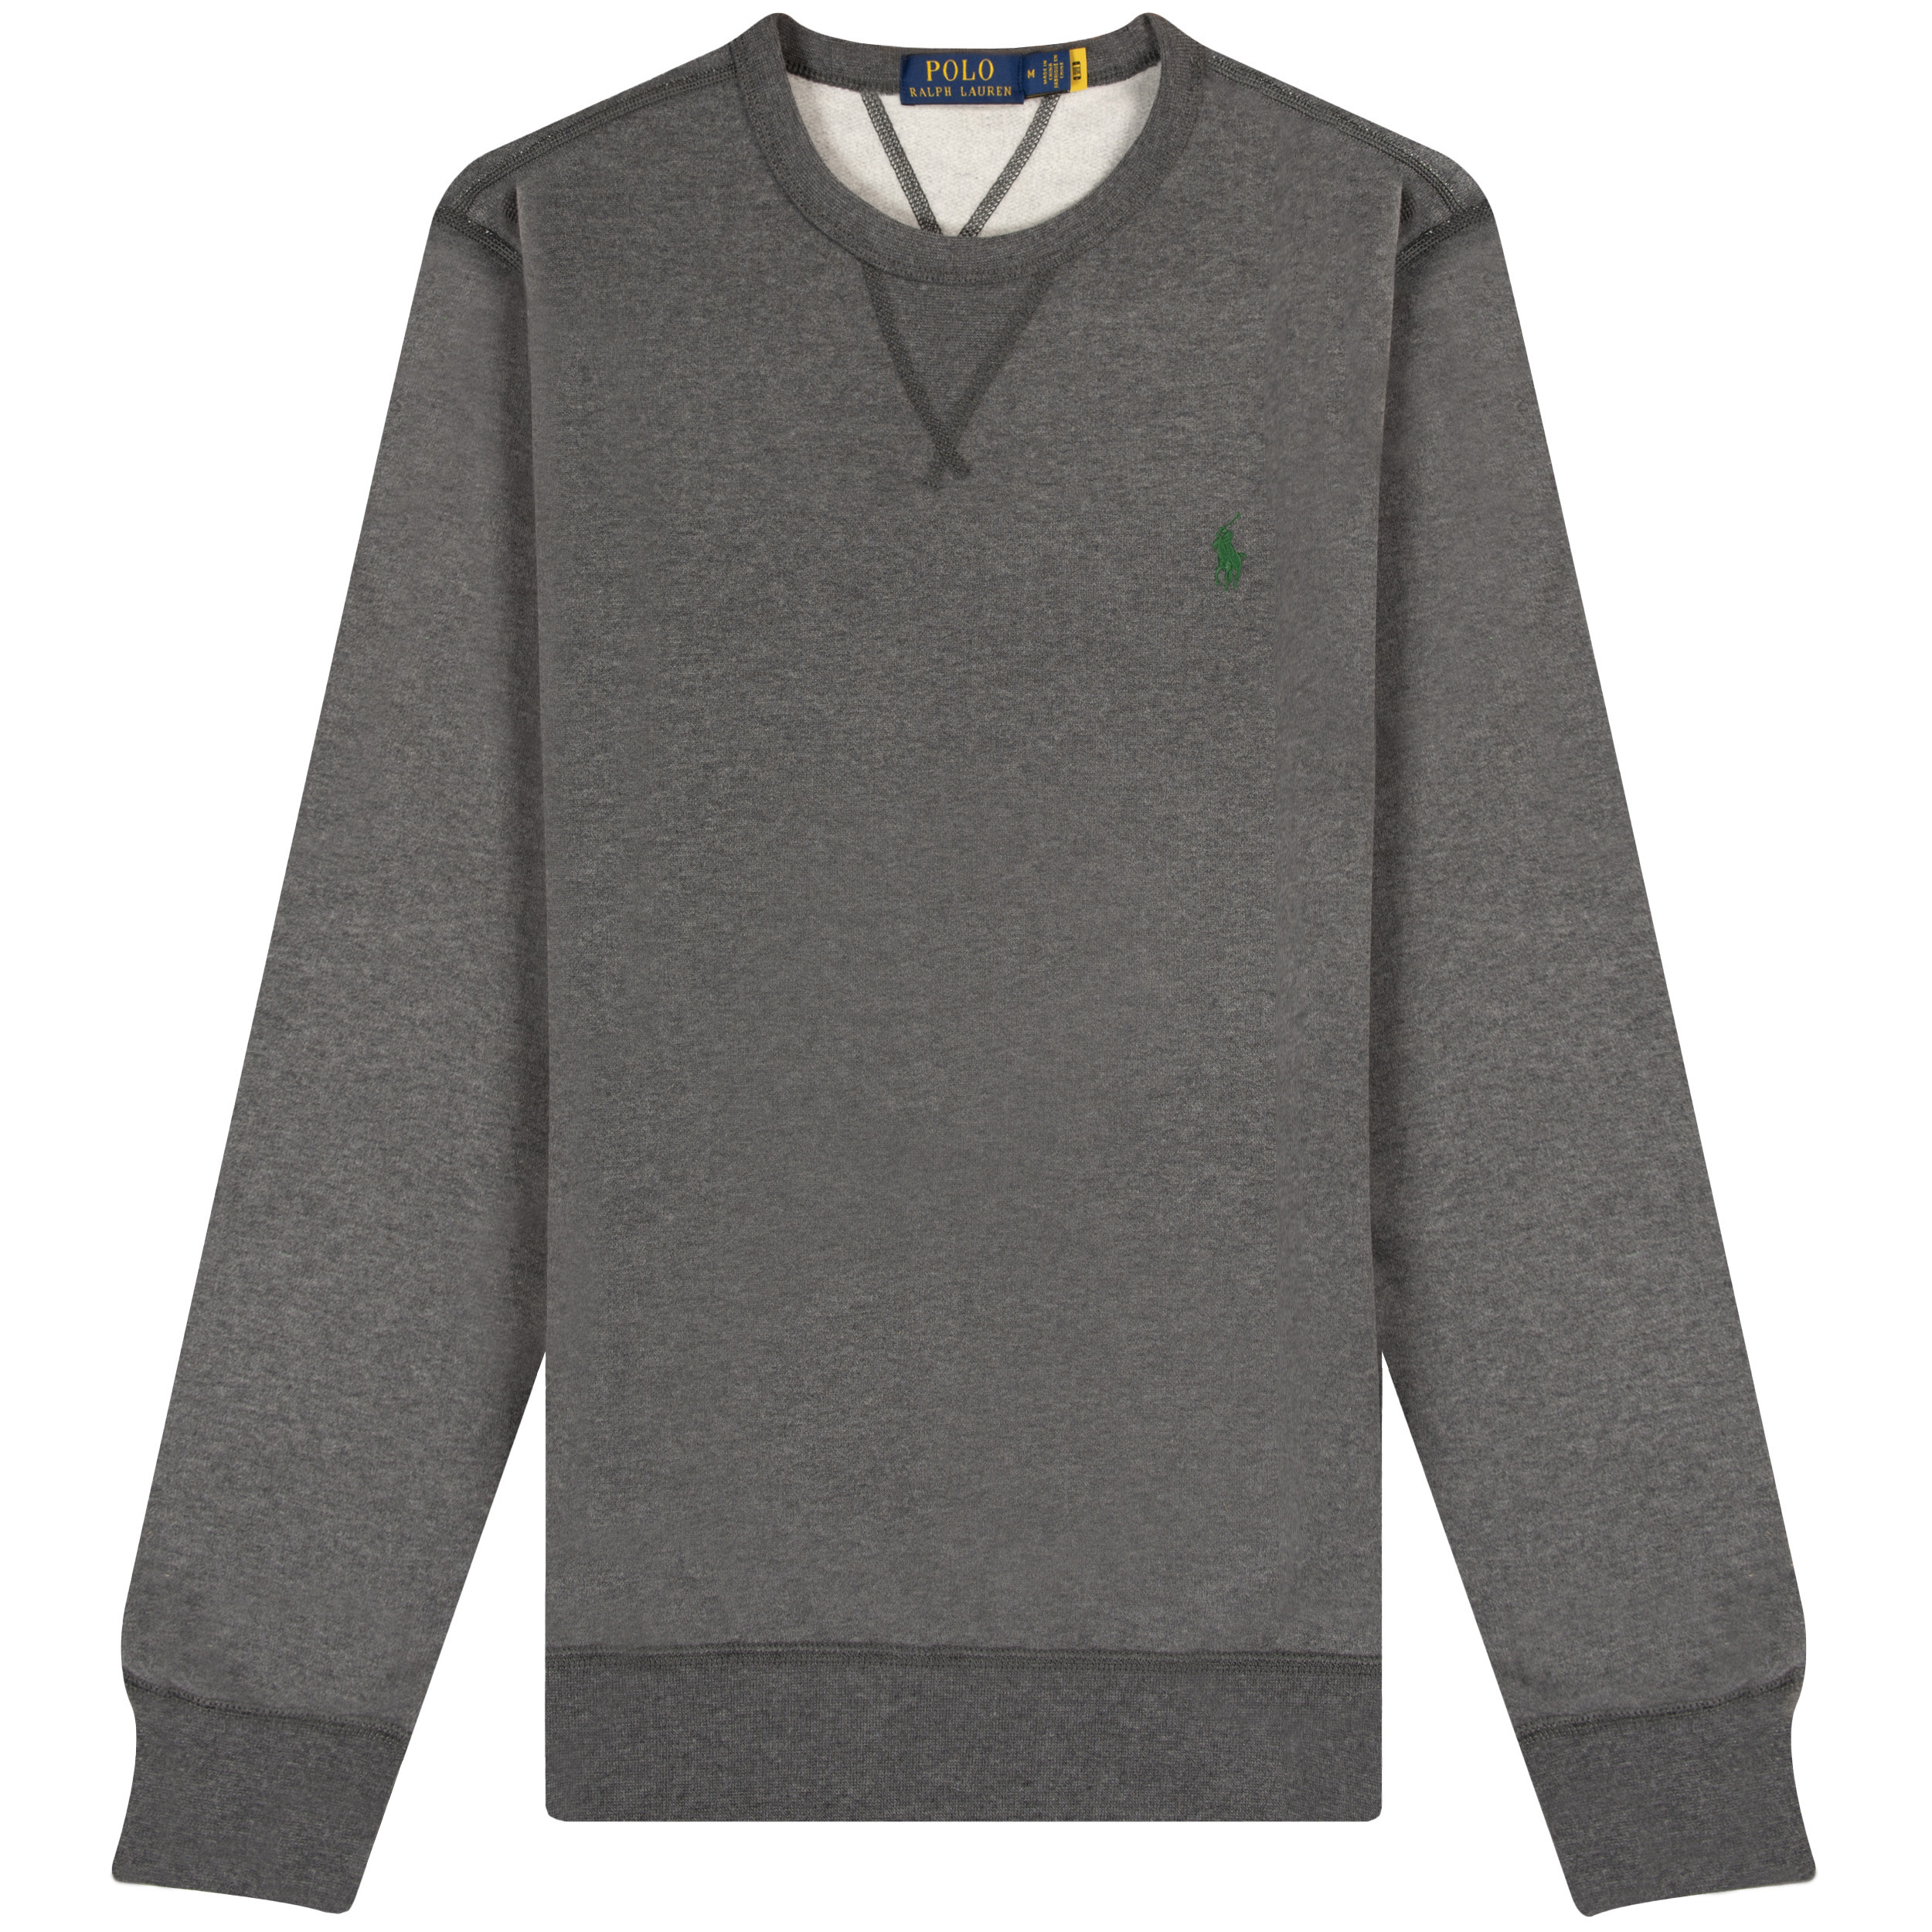 Polo Ralph Lauren CORE Classic Crew Sweatshirt Grey Heather